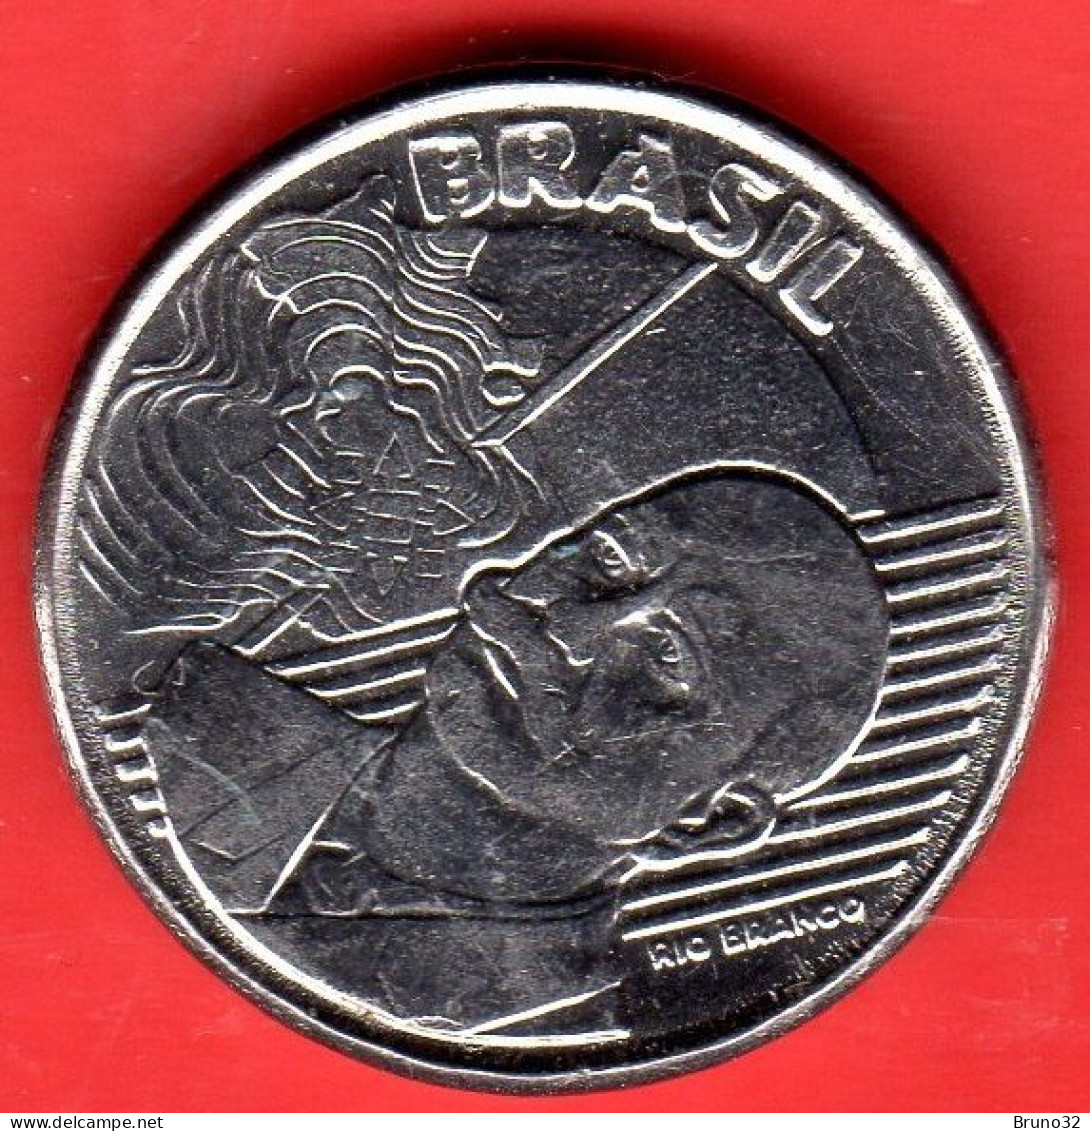 BRASILE - BRASIL - 2002 - 50 Centavos - QFDC/aUNC - Come Da Foto - Brasil